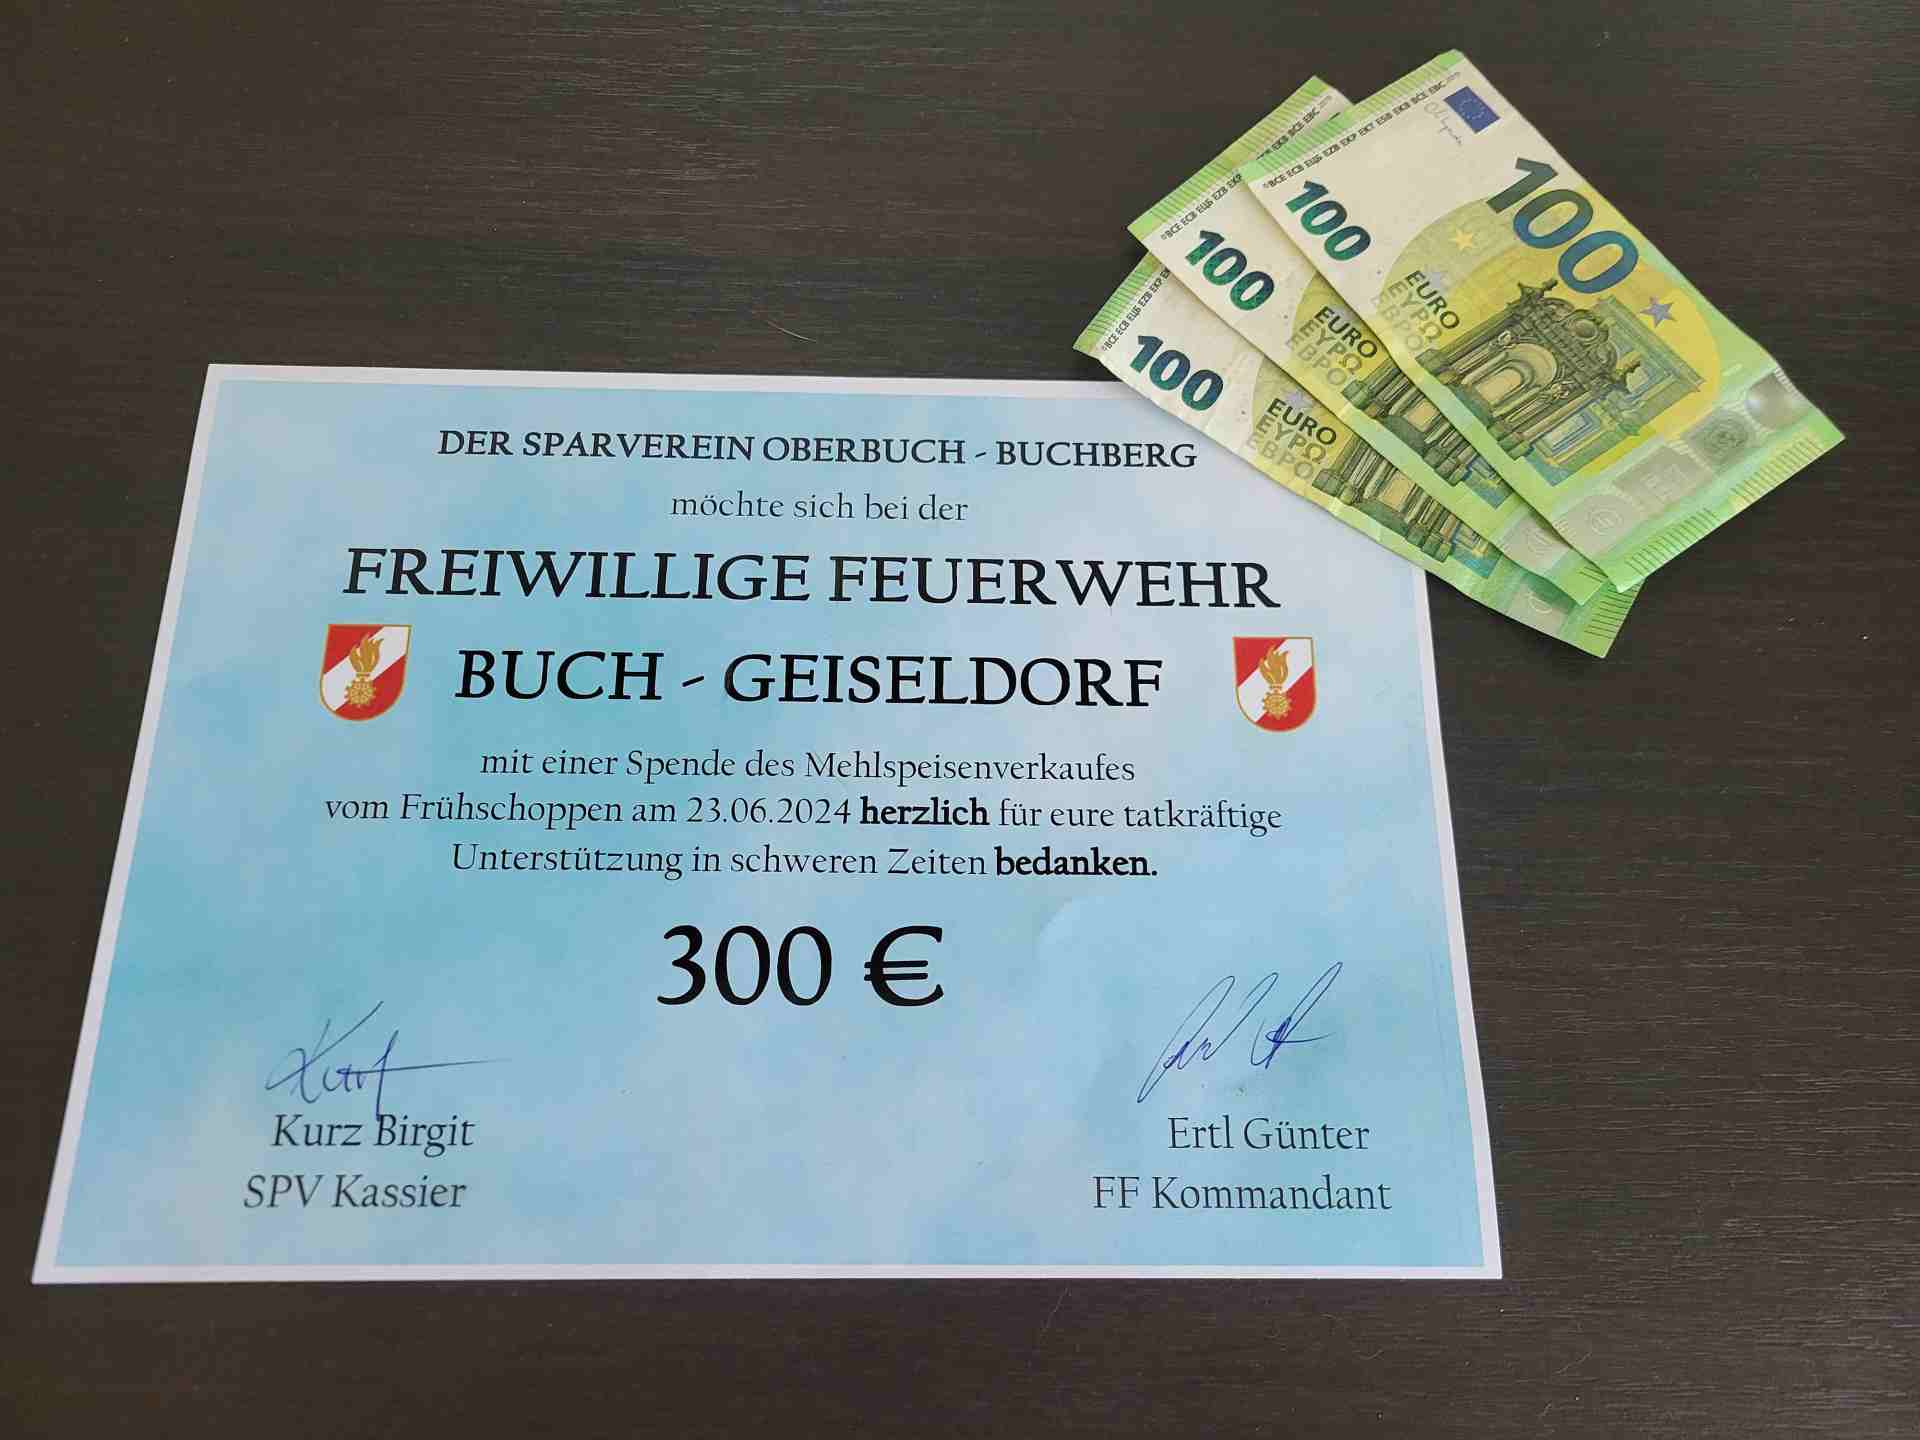 300 € Spende vom Sparverrein Oberbuch-Buchberg